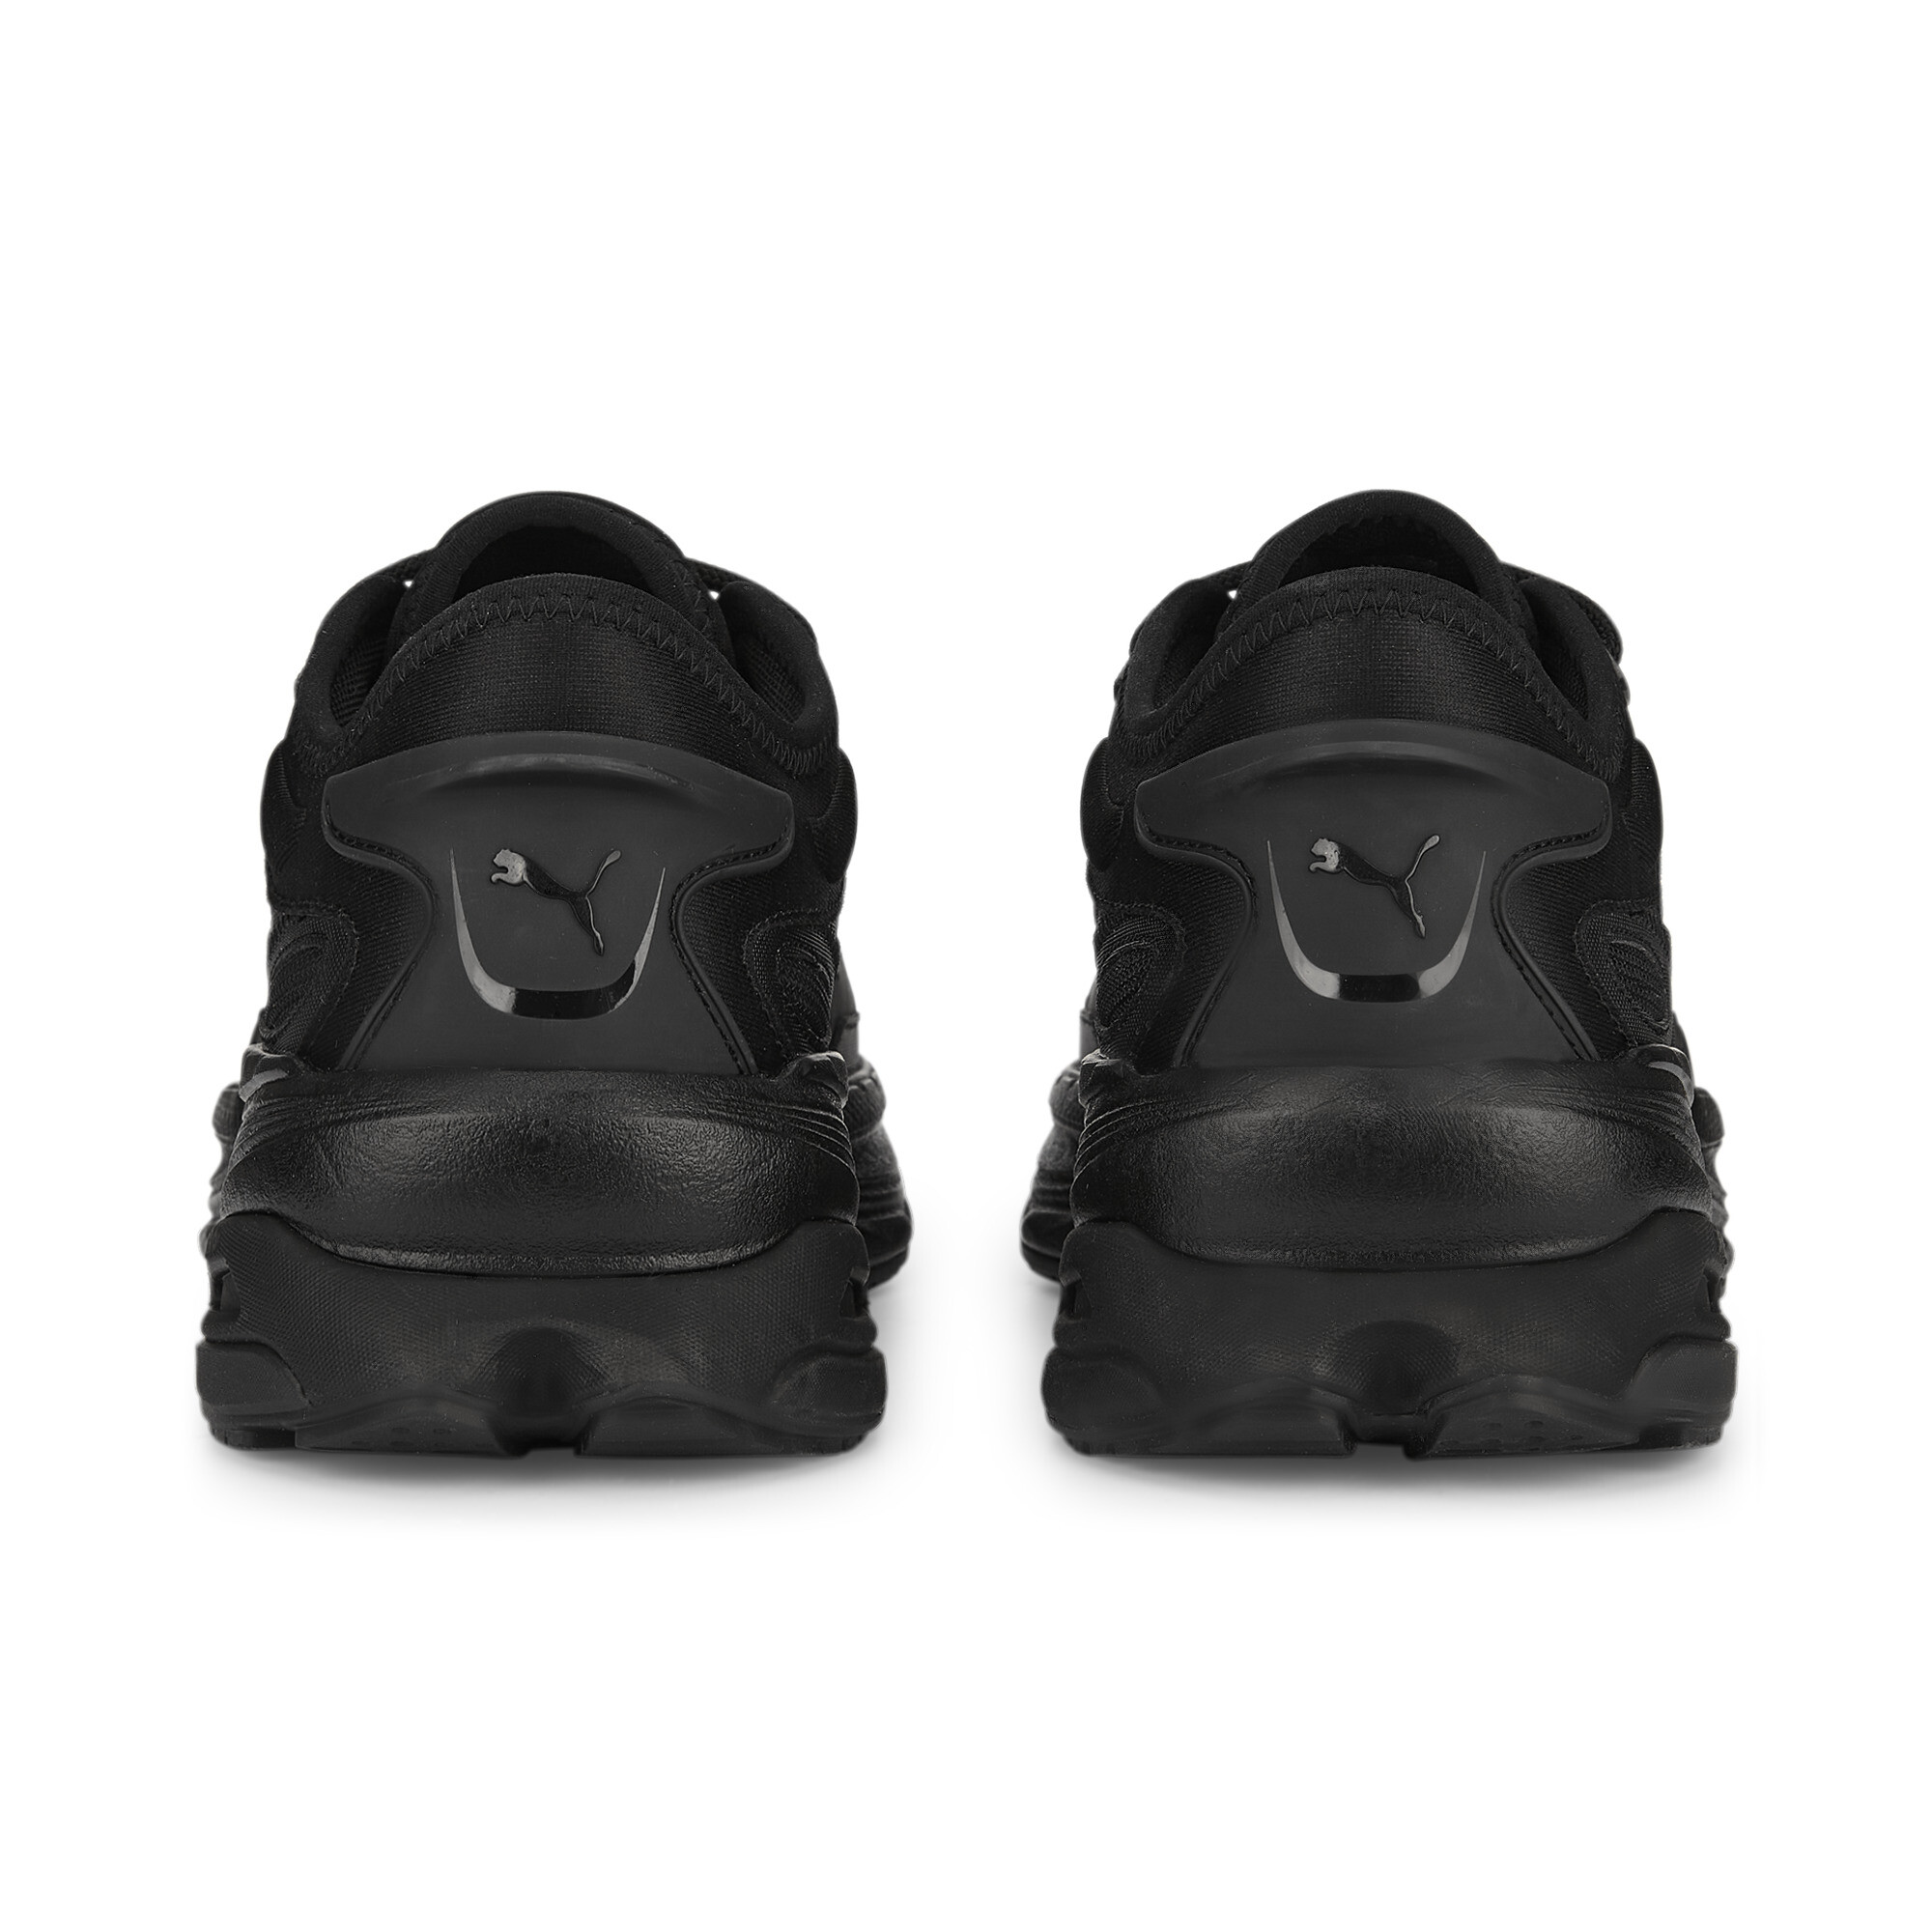 Men's PUMA Extent Nitro Mono Sneakers In Black, Size EU 42